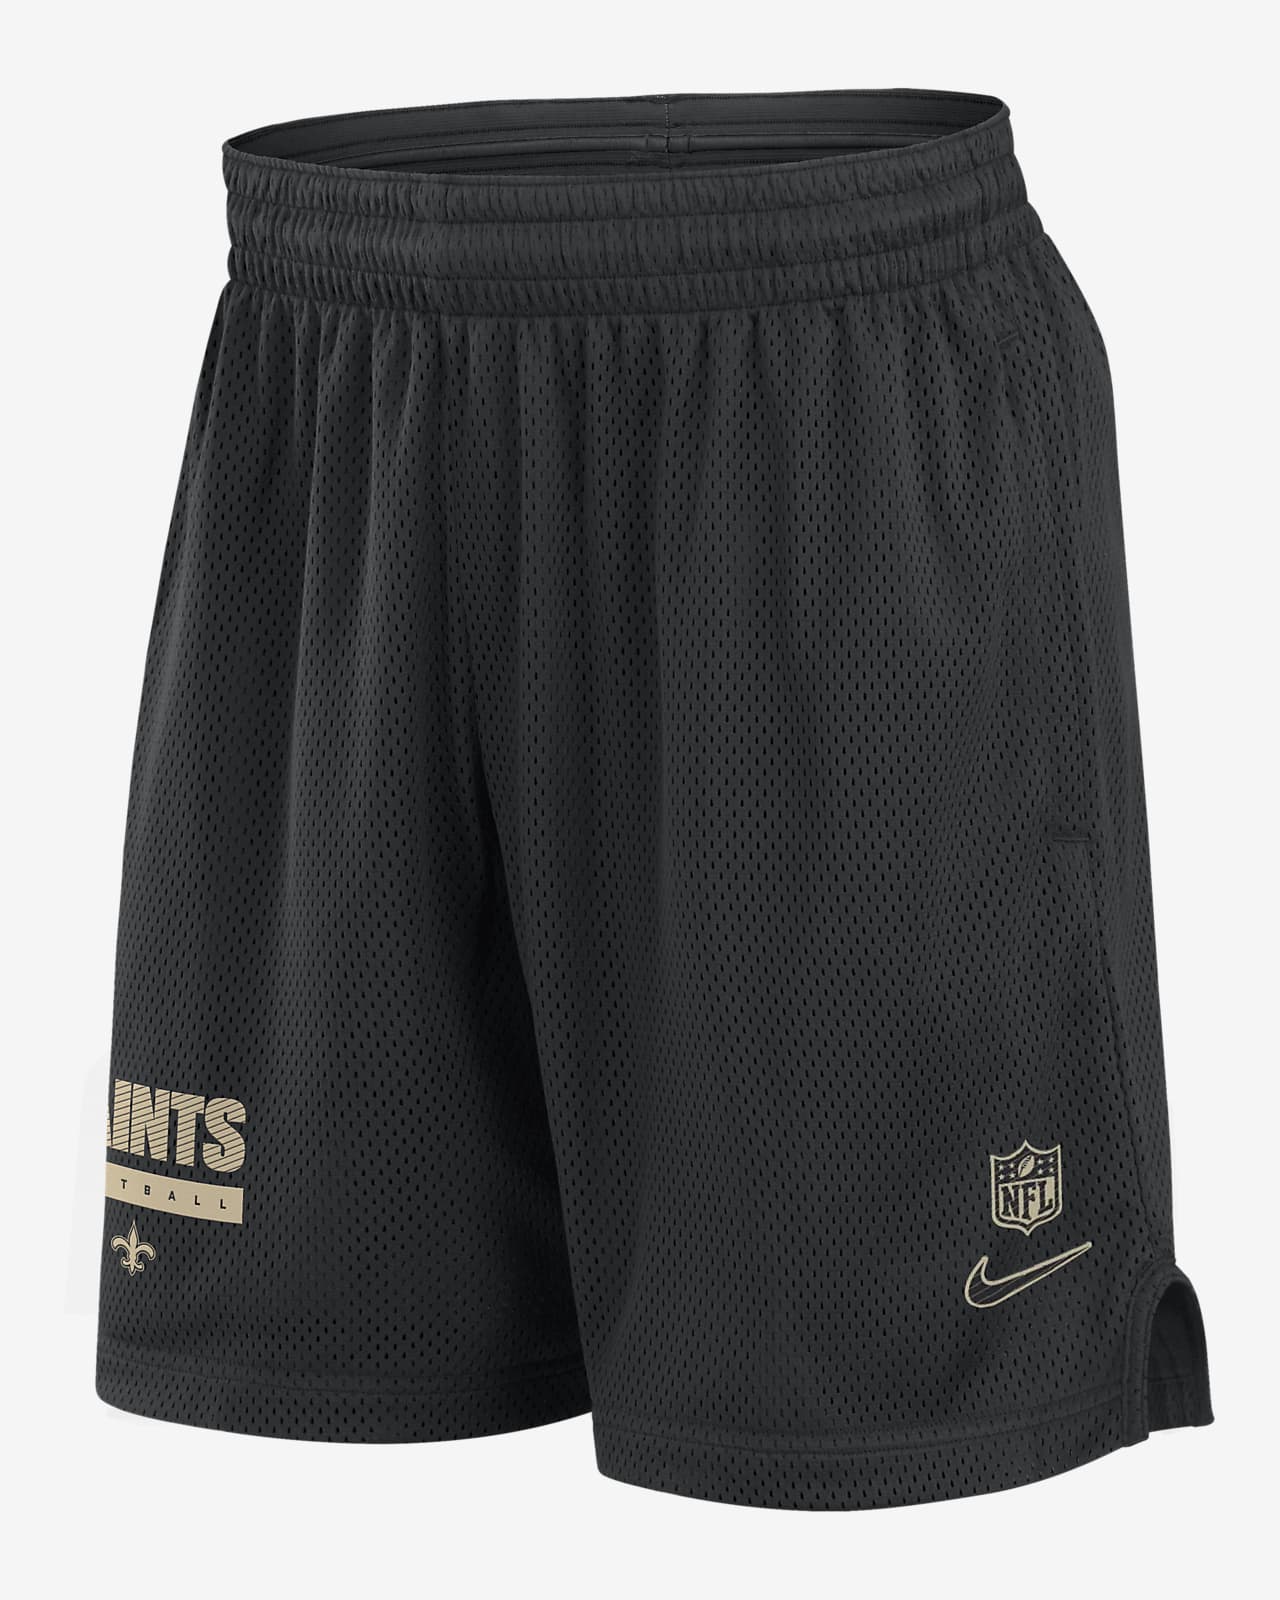 Shorts Nike Dri-FIT de la NFL para hombre New Orleans Saints Sideline